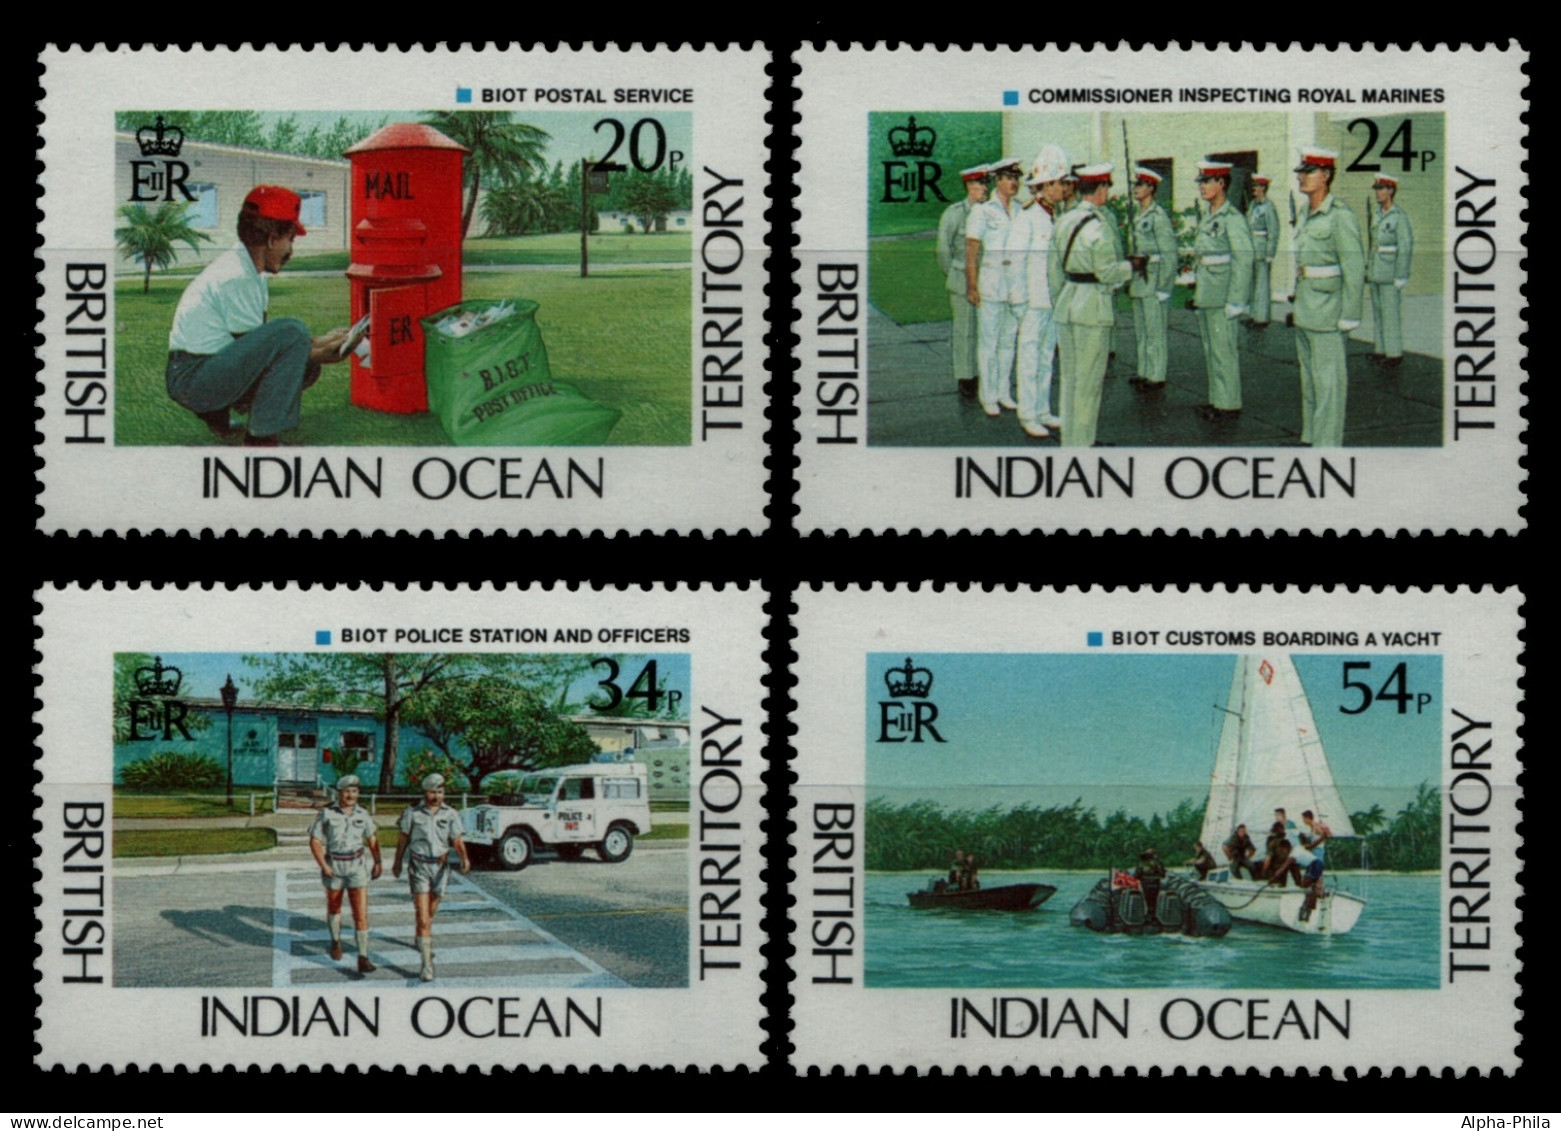 BIOT 1991 - Mi-Nr. 111-114 ** - MNH - Post - Polizei - Zoll - Territorio Británico Del Océano Índico